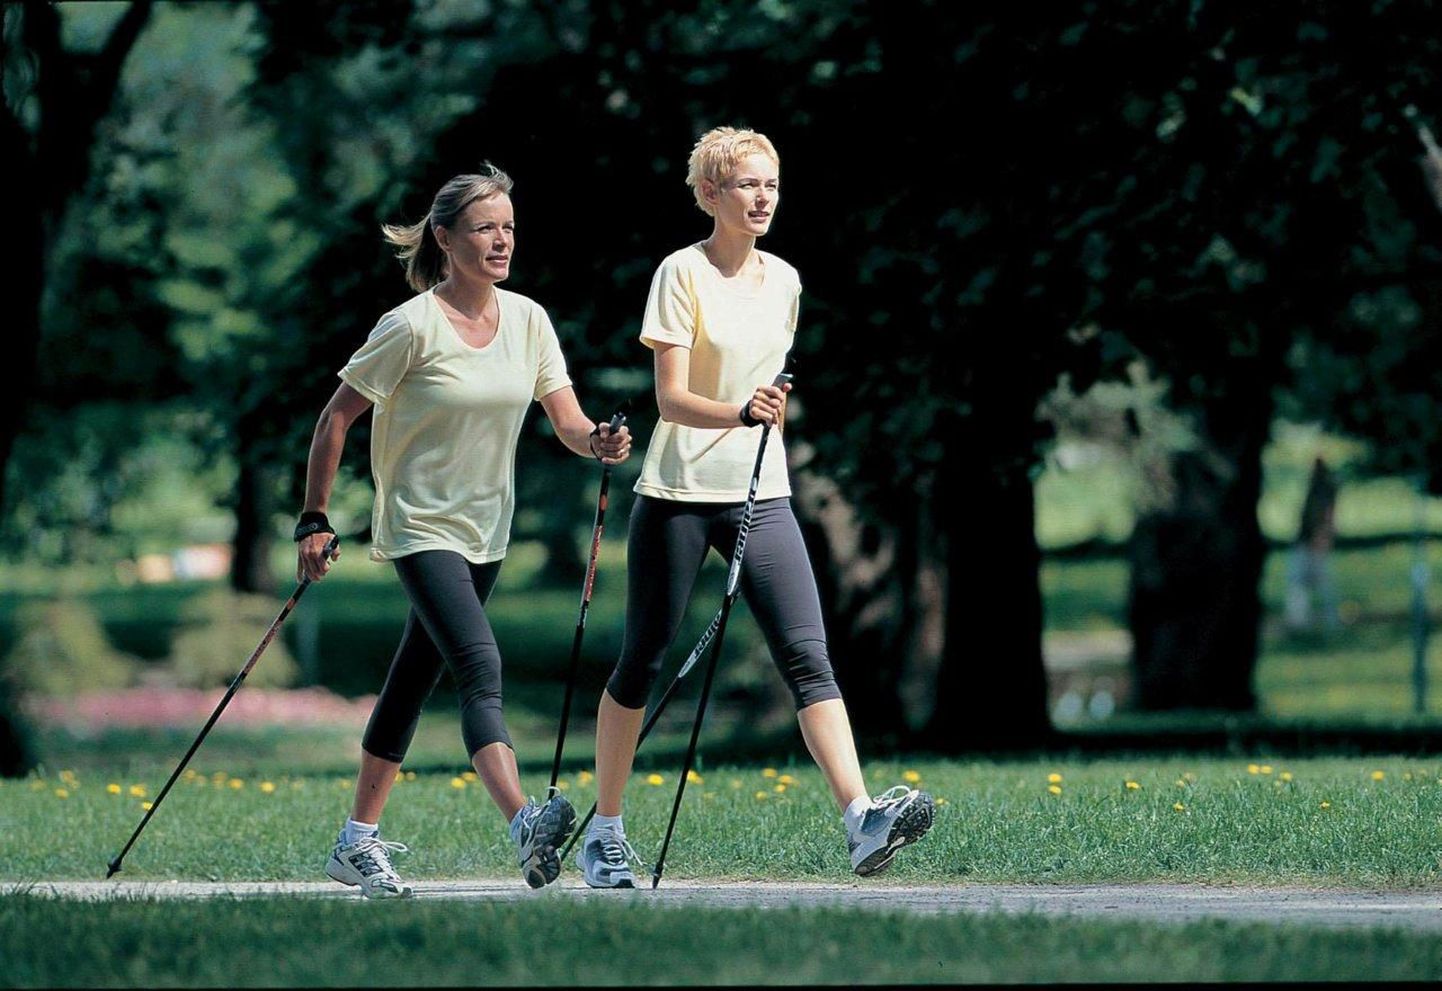 Скандинавская ходьба полезна в любом возрасте, при любой физической подготовке.